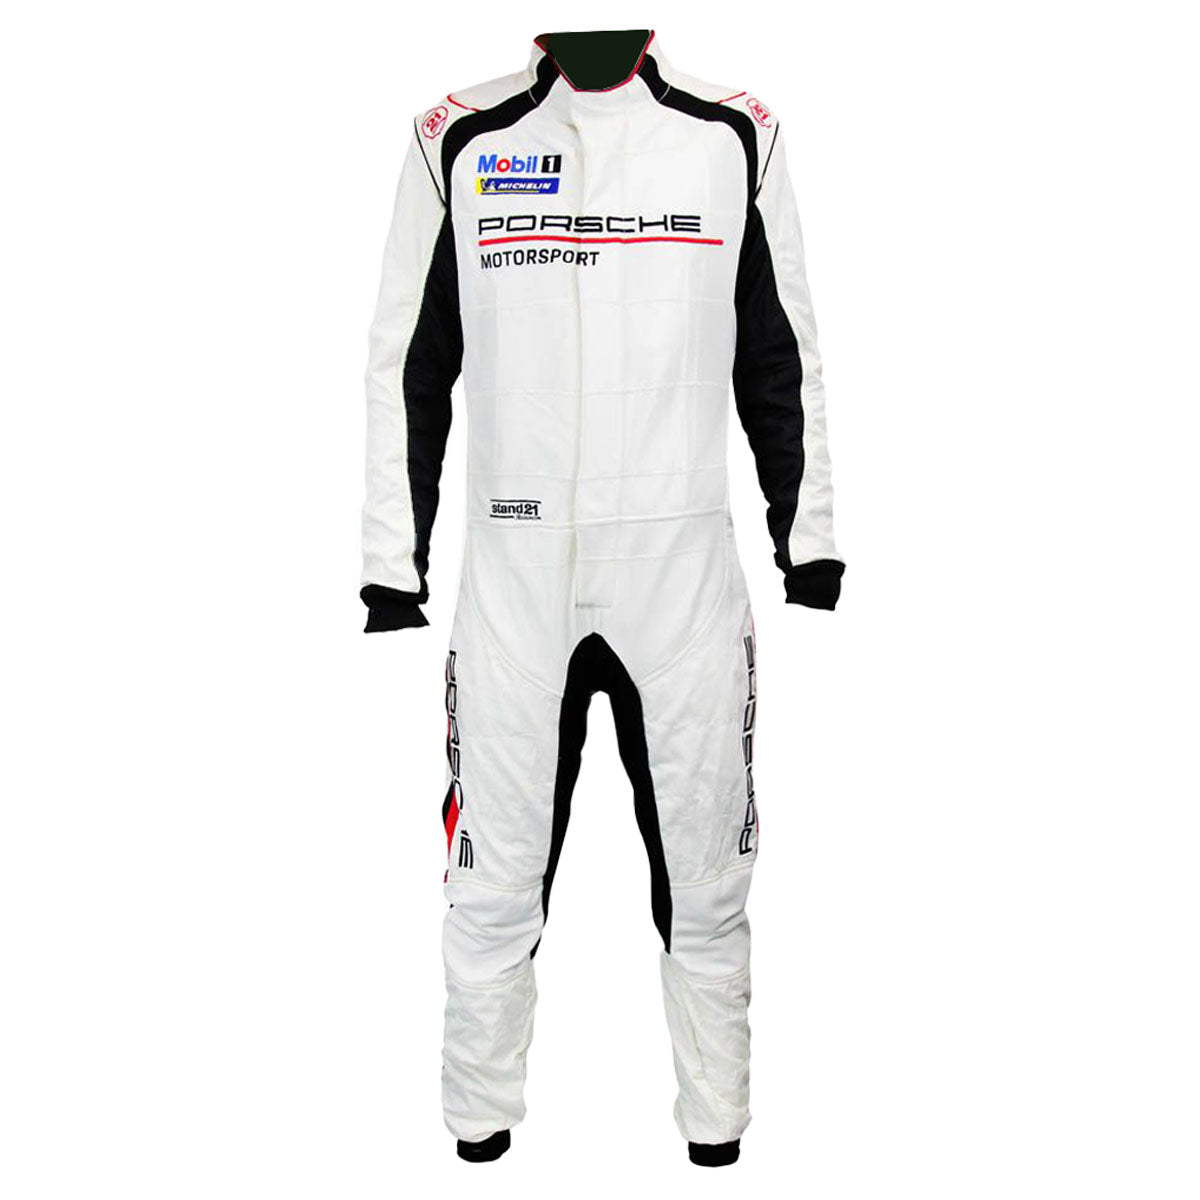 Stand21 Porsche Motorsport La Couture Hybrid Fire Suit